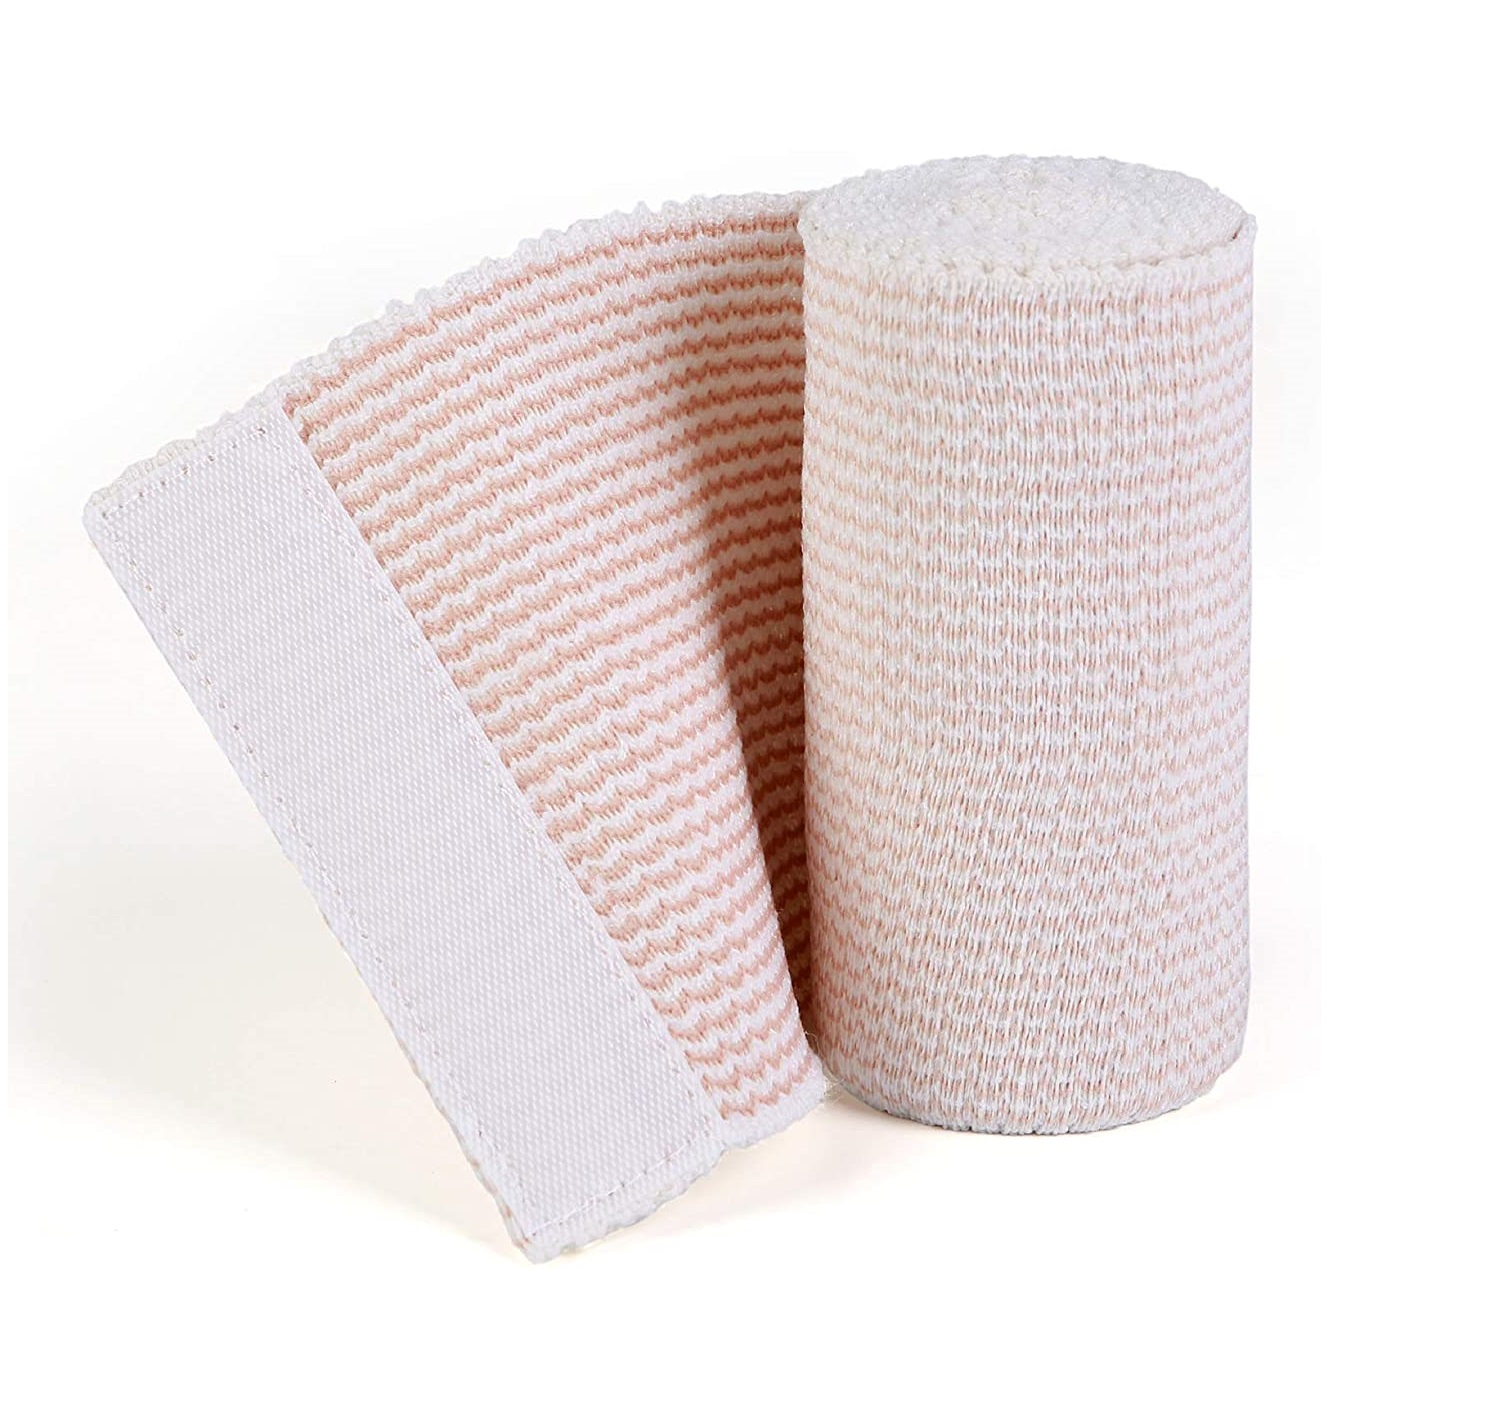 Bende elastiche elastiche in cotone a compressione teste